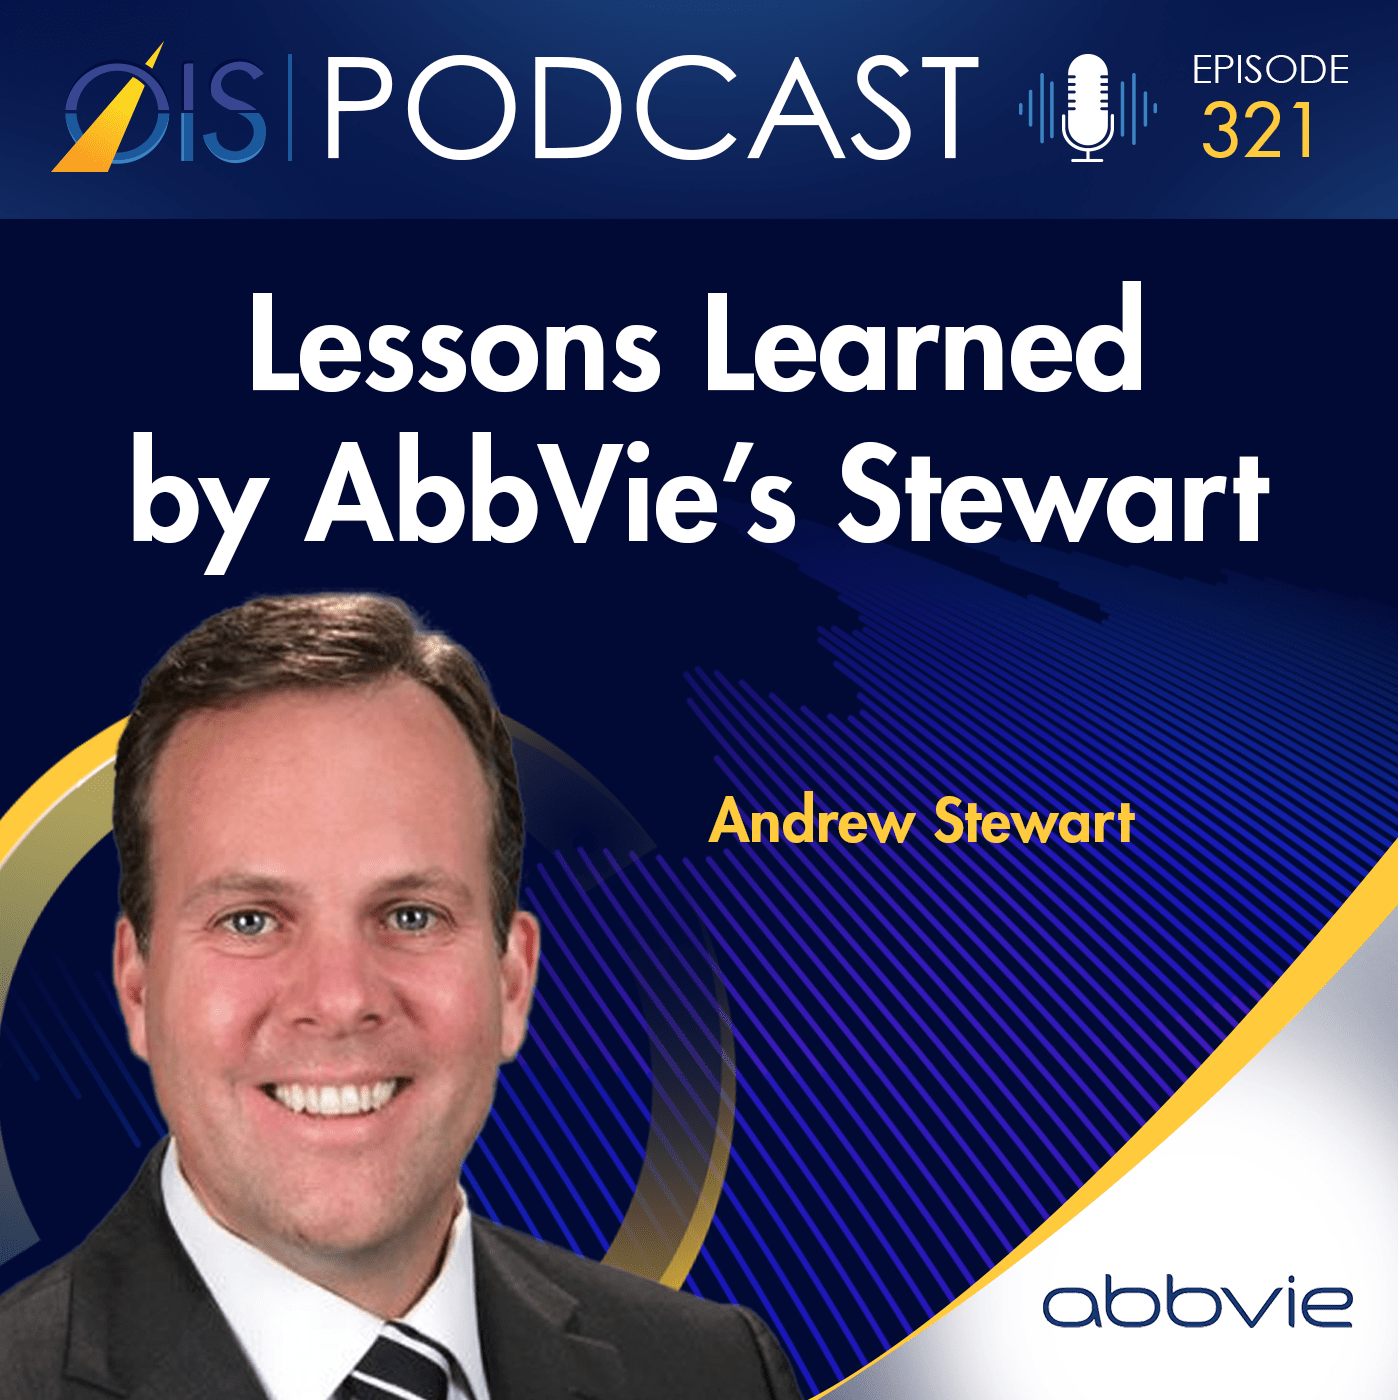 Andrew Stewart - Abbvie